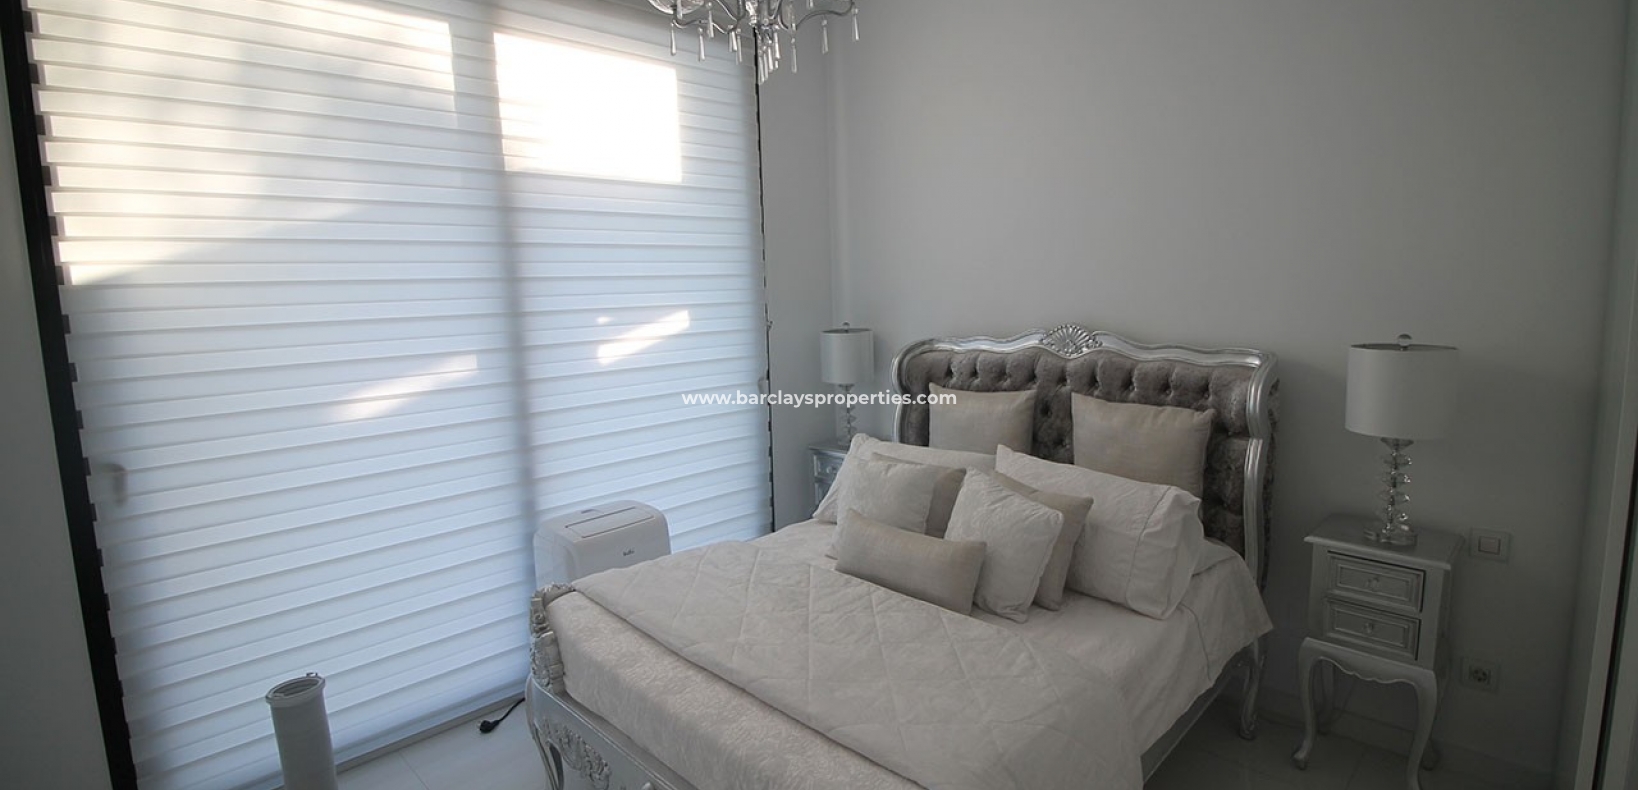 Dormitorio - Chalet moderna en venta en urbanización La Marina